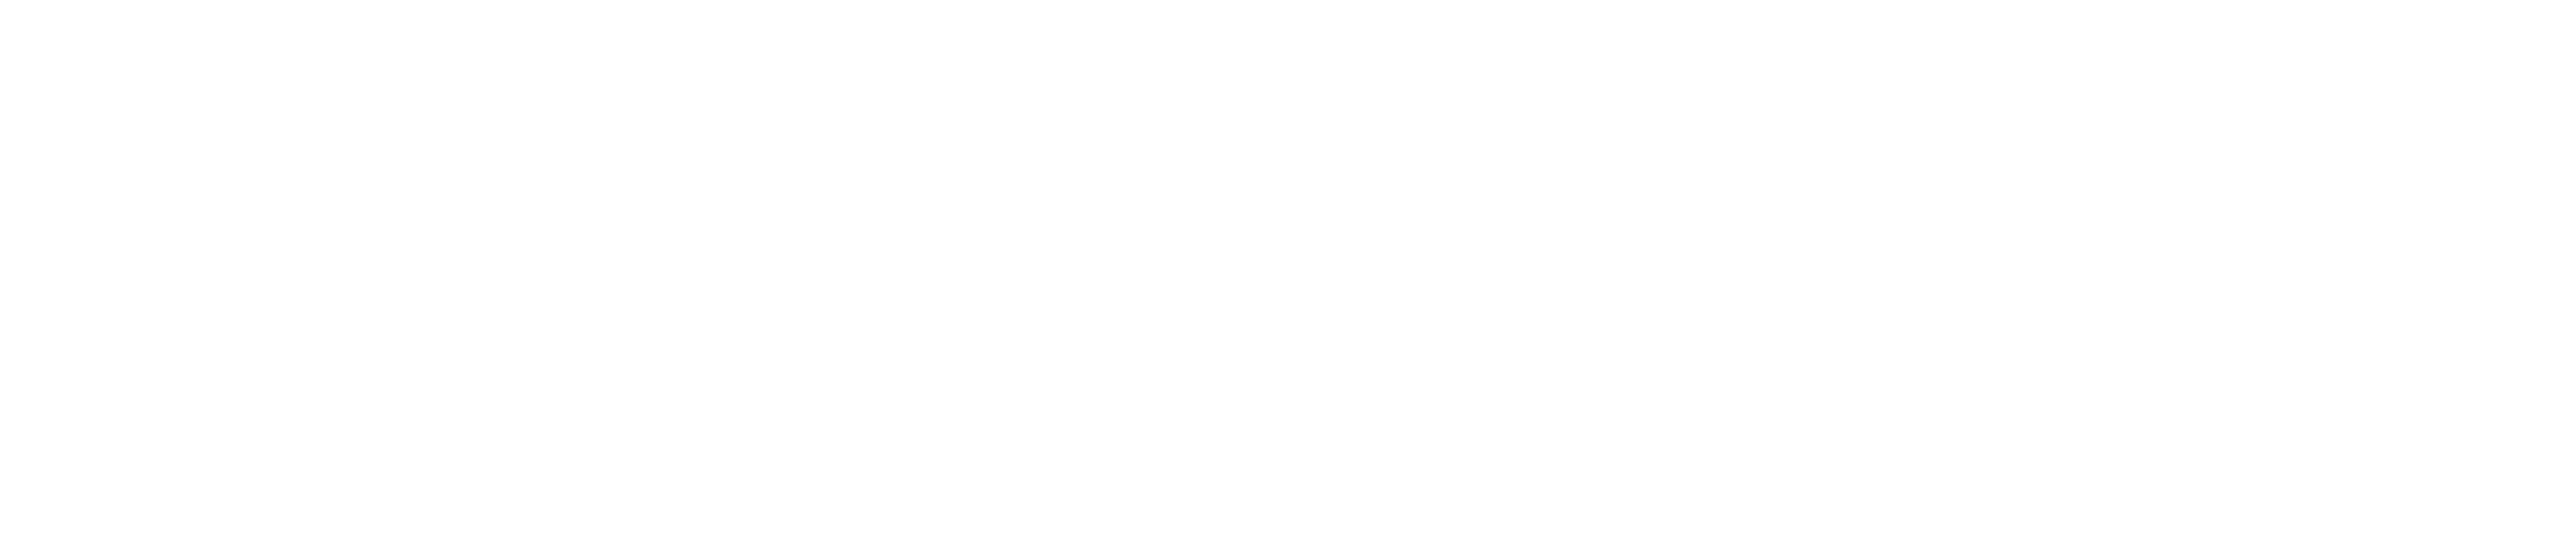 Rares Logo